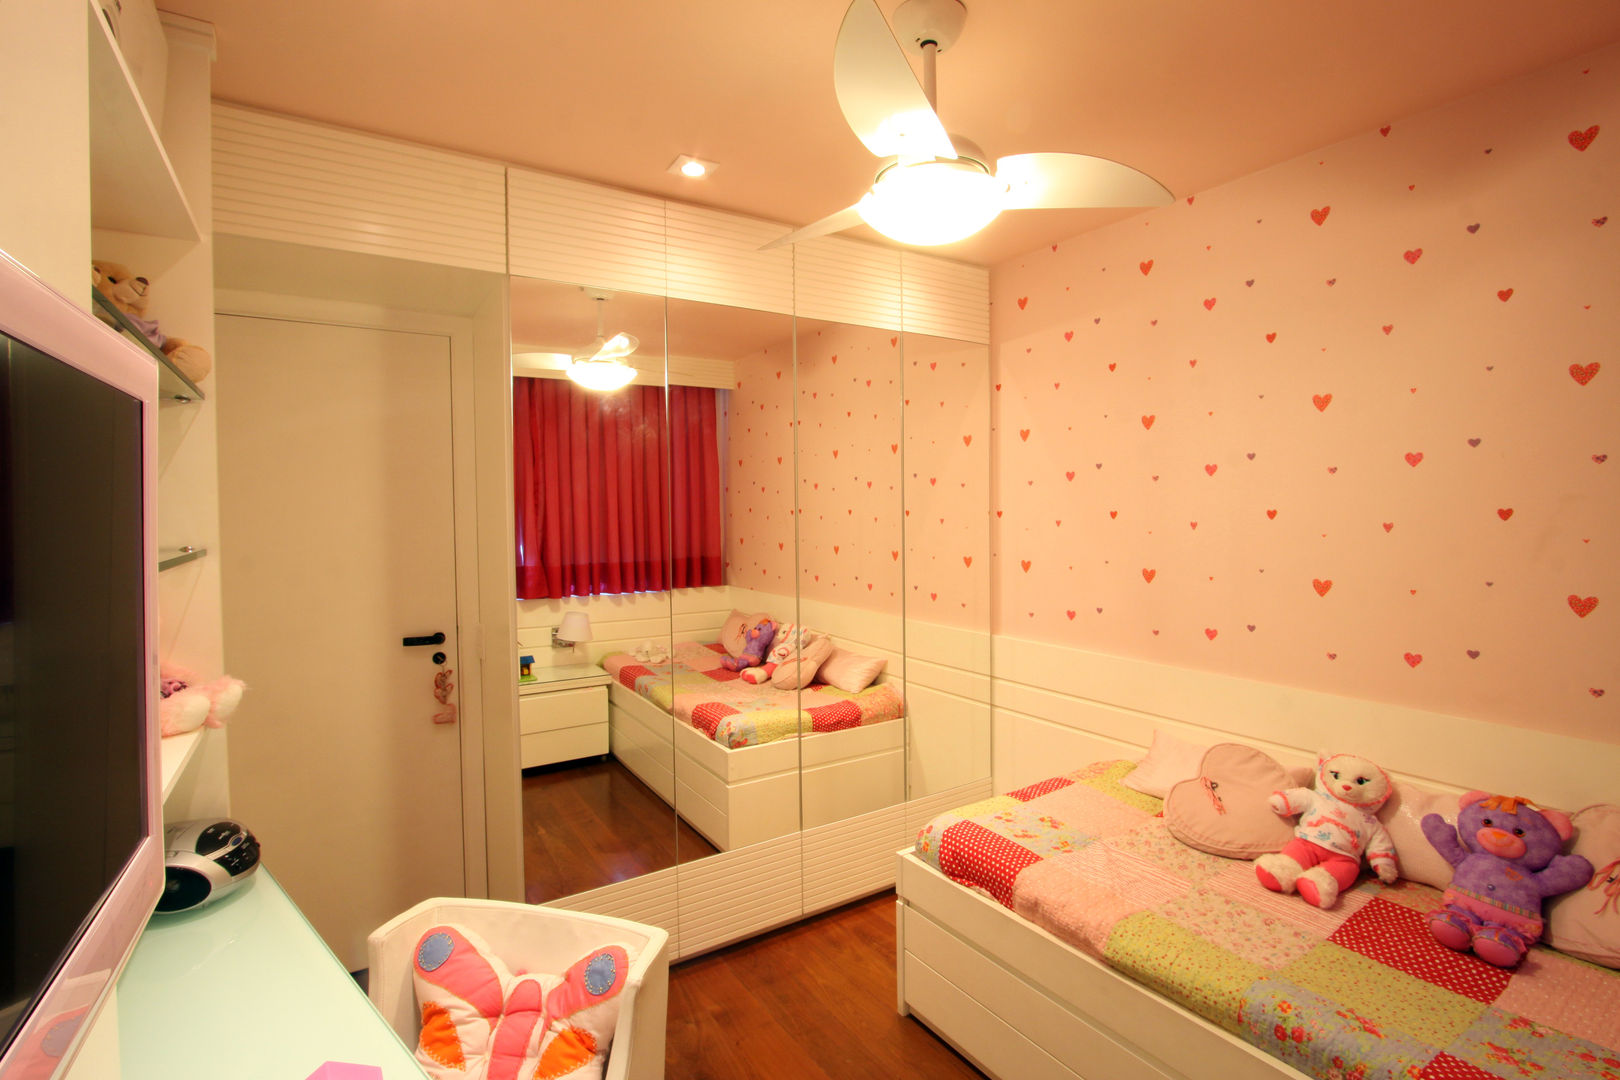 Apartamento em Icaraí II - Niterói, Arquinovação - Projetos e Obras Arquinovação - Projetos e Obras Nursery/kid’s room